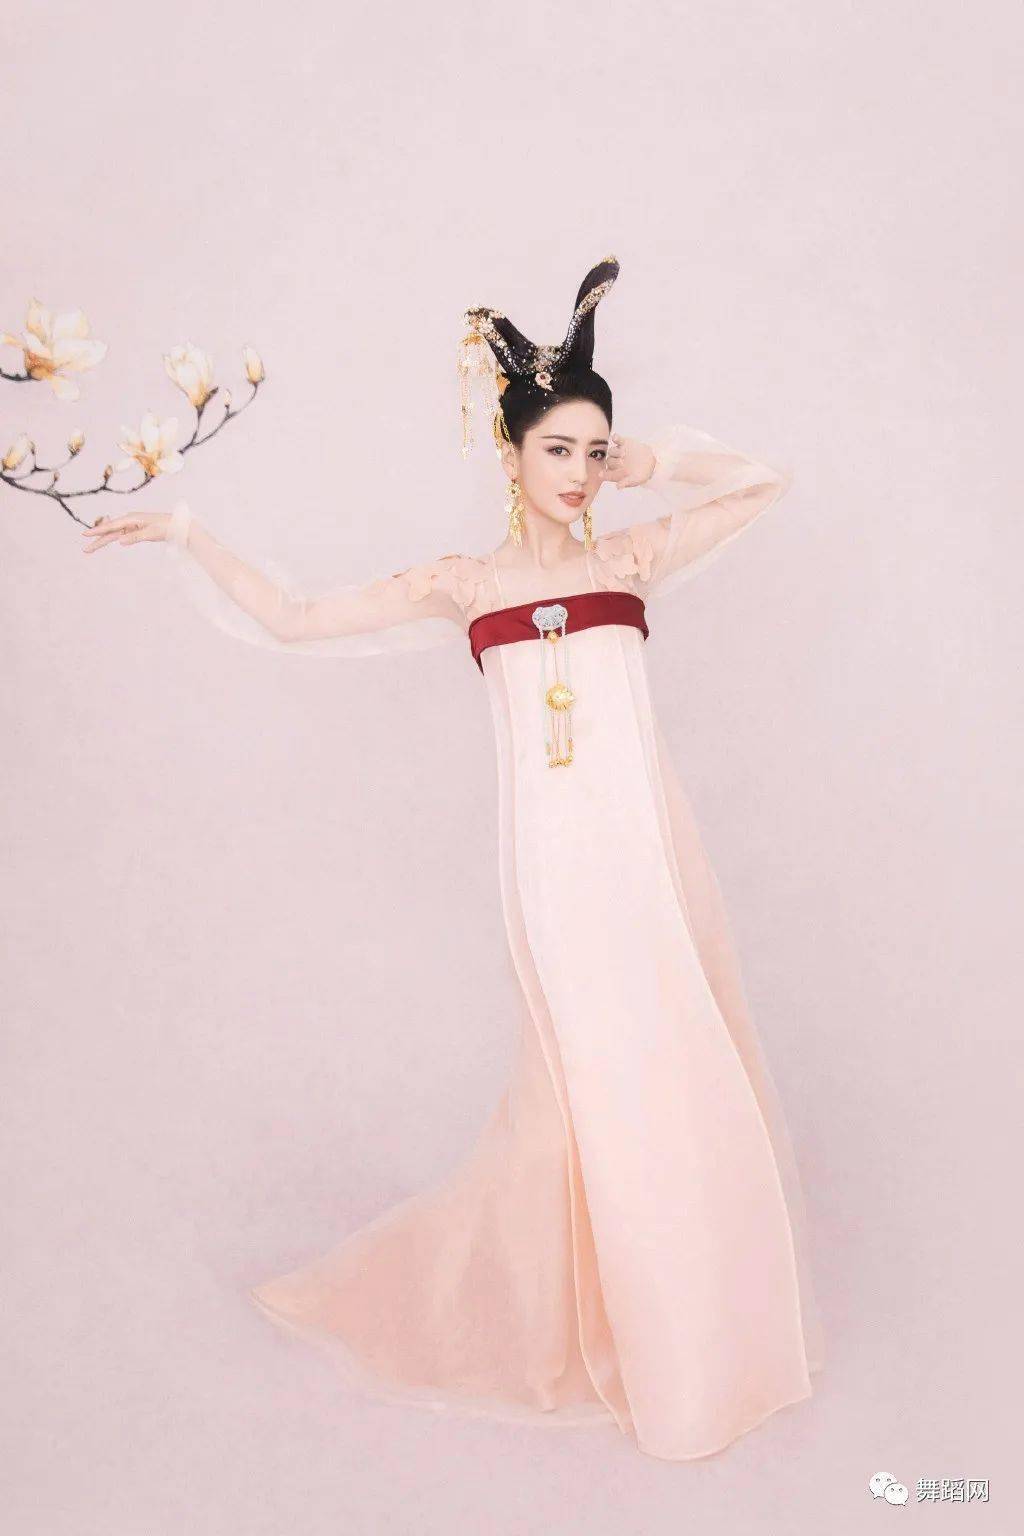 佟丽娅的这个惊鸿髻发型取材于唐代舞俑是由舞剧《杜甫》的造型师贾雷